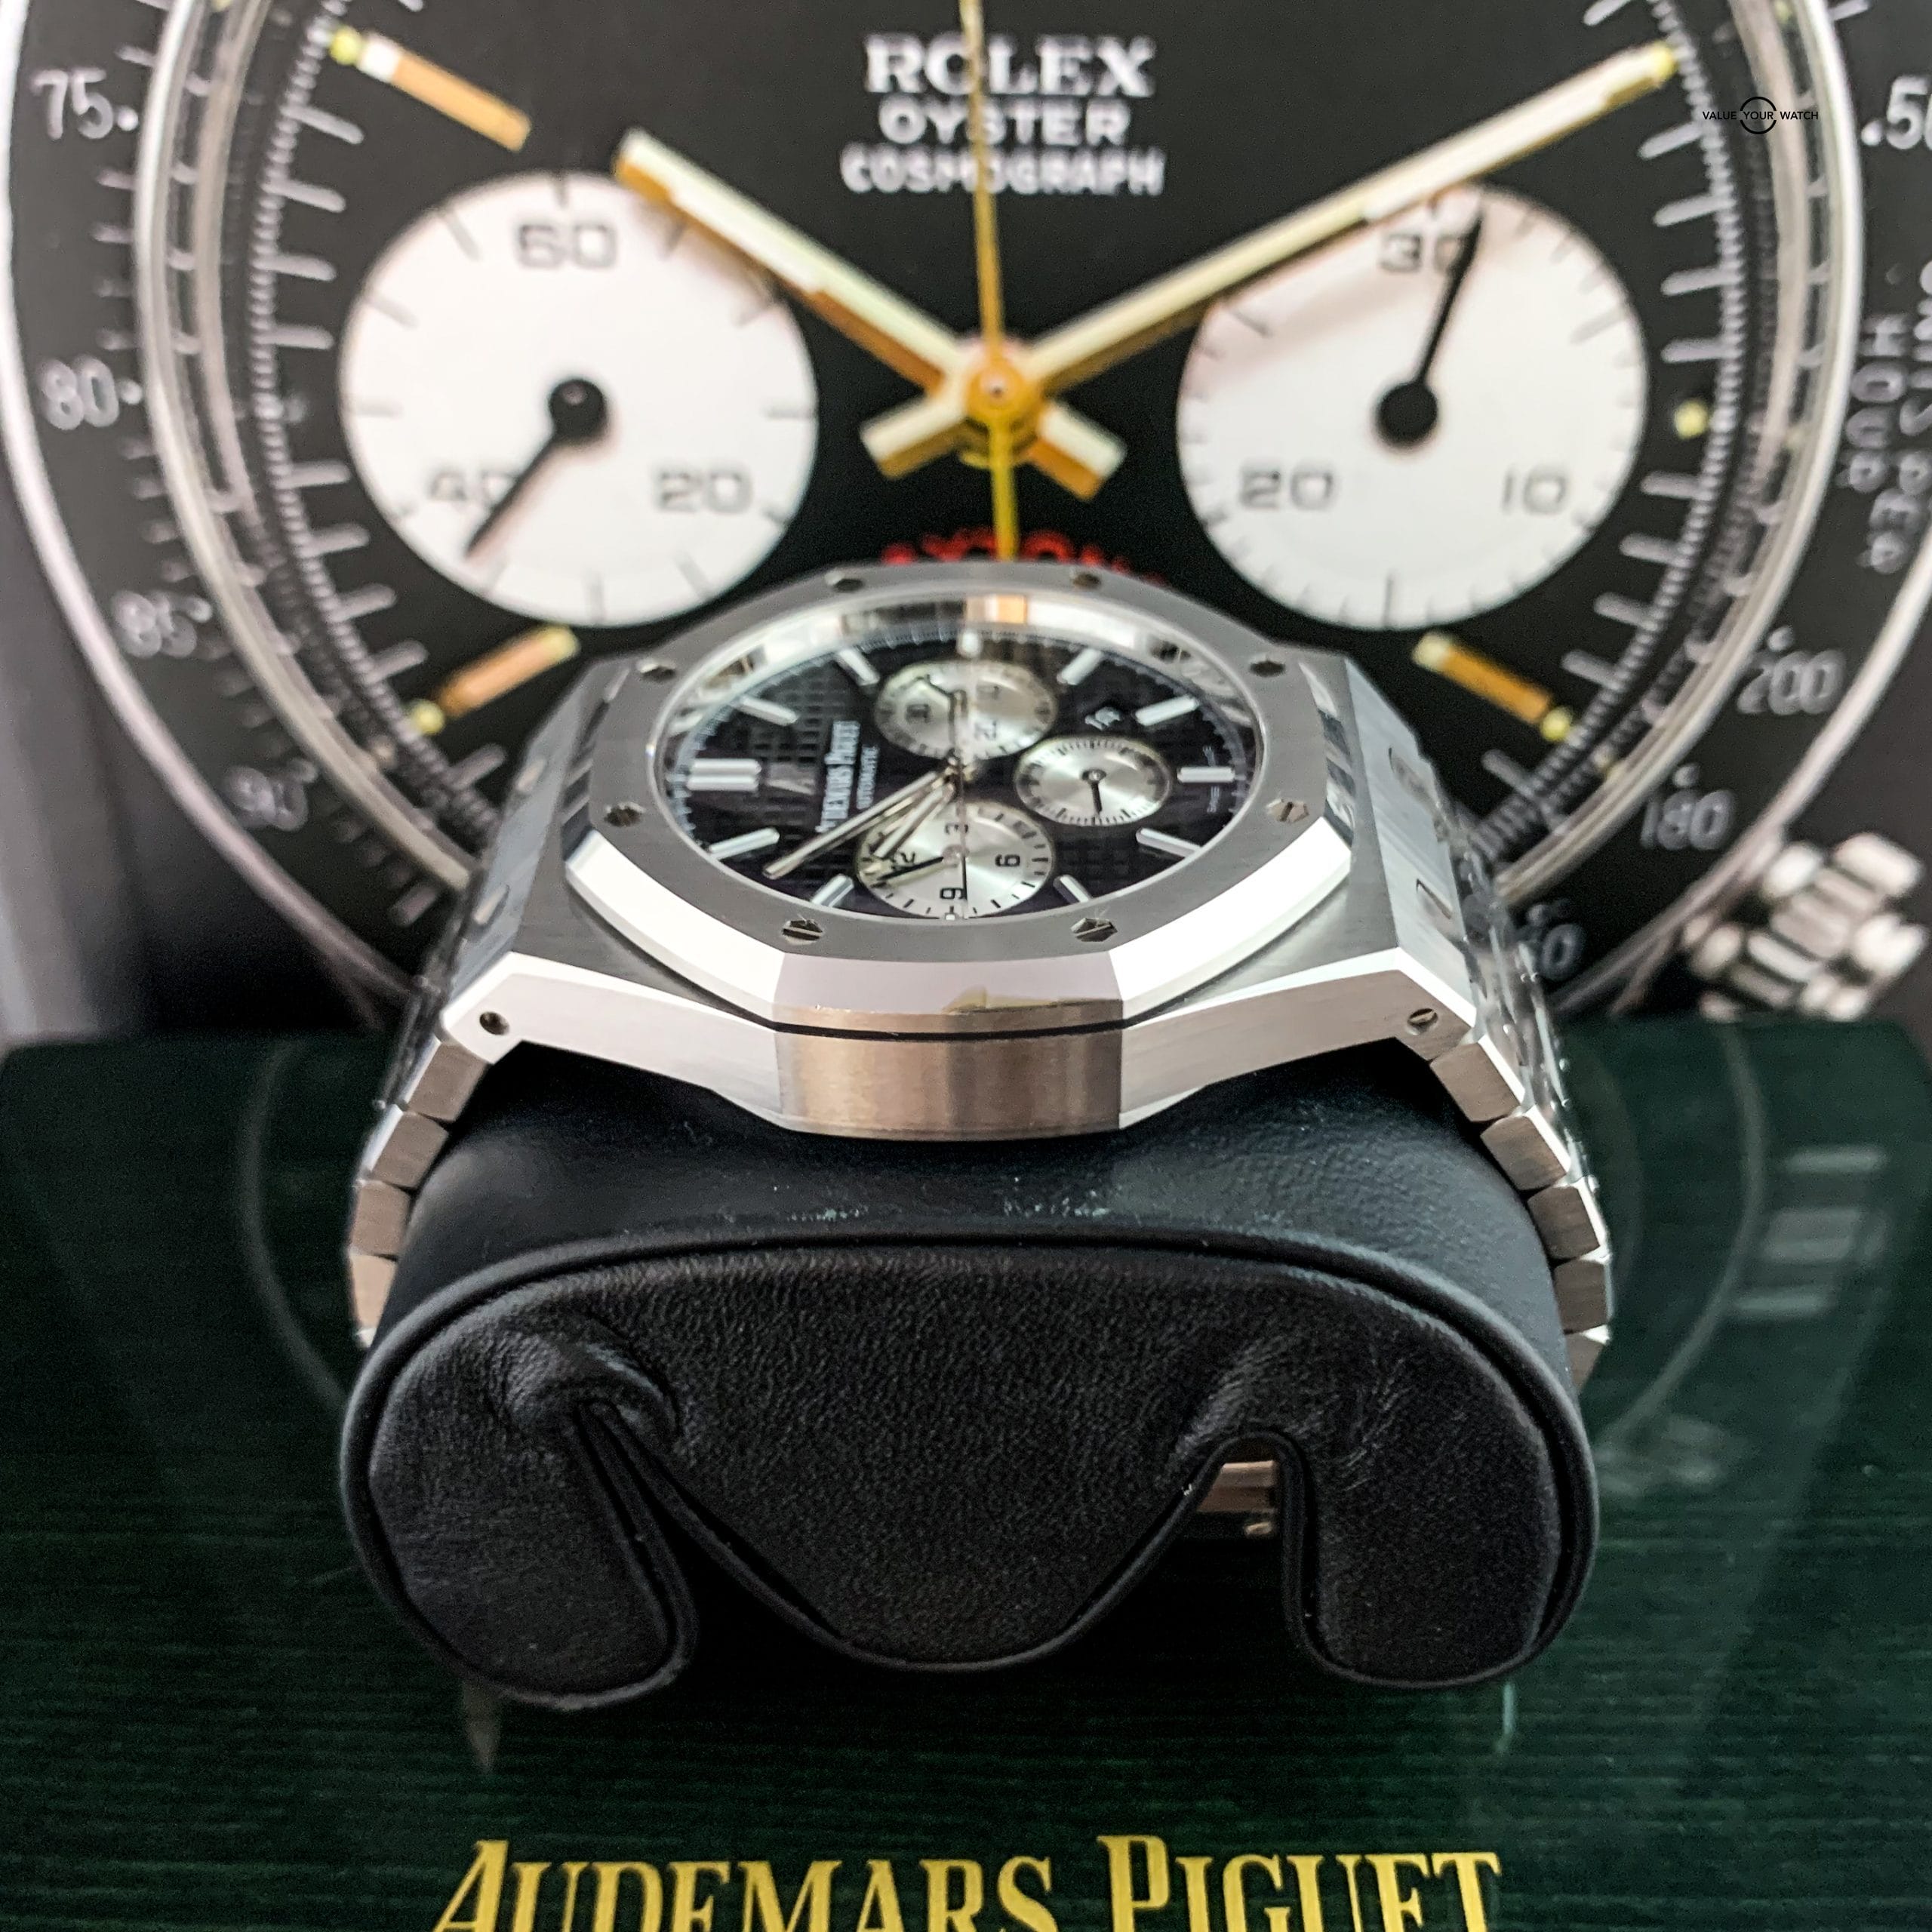 Audemars Piguet Royal Oak Chronograph 41mm 26331ST Black Dial